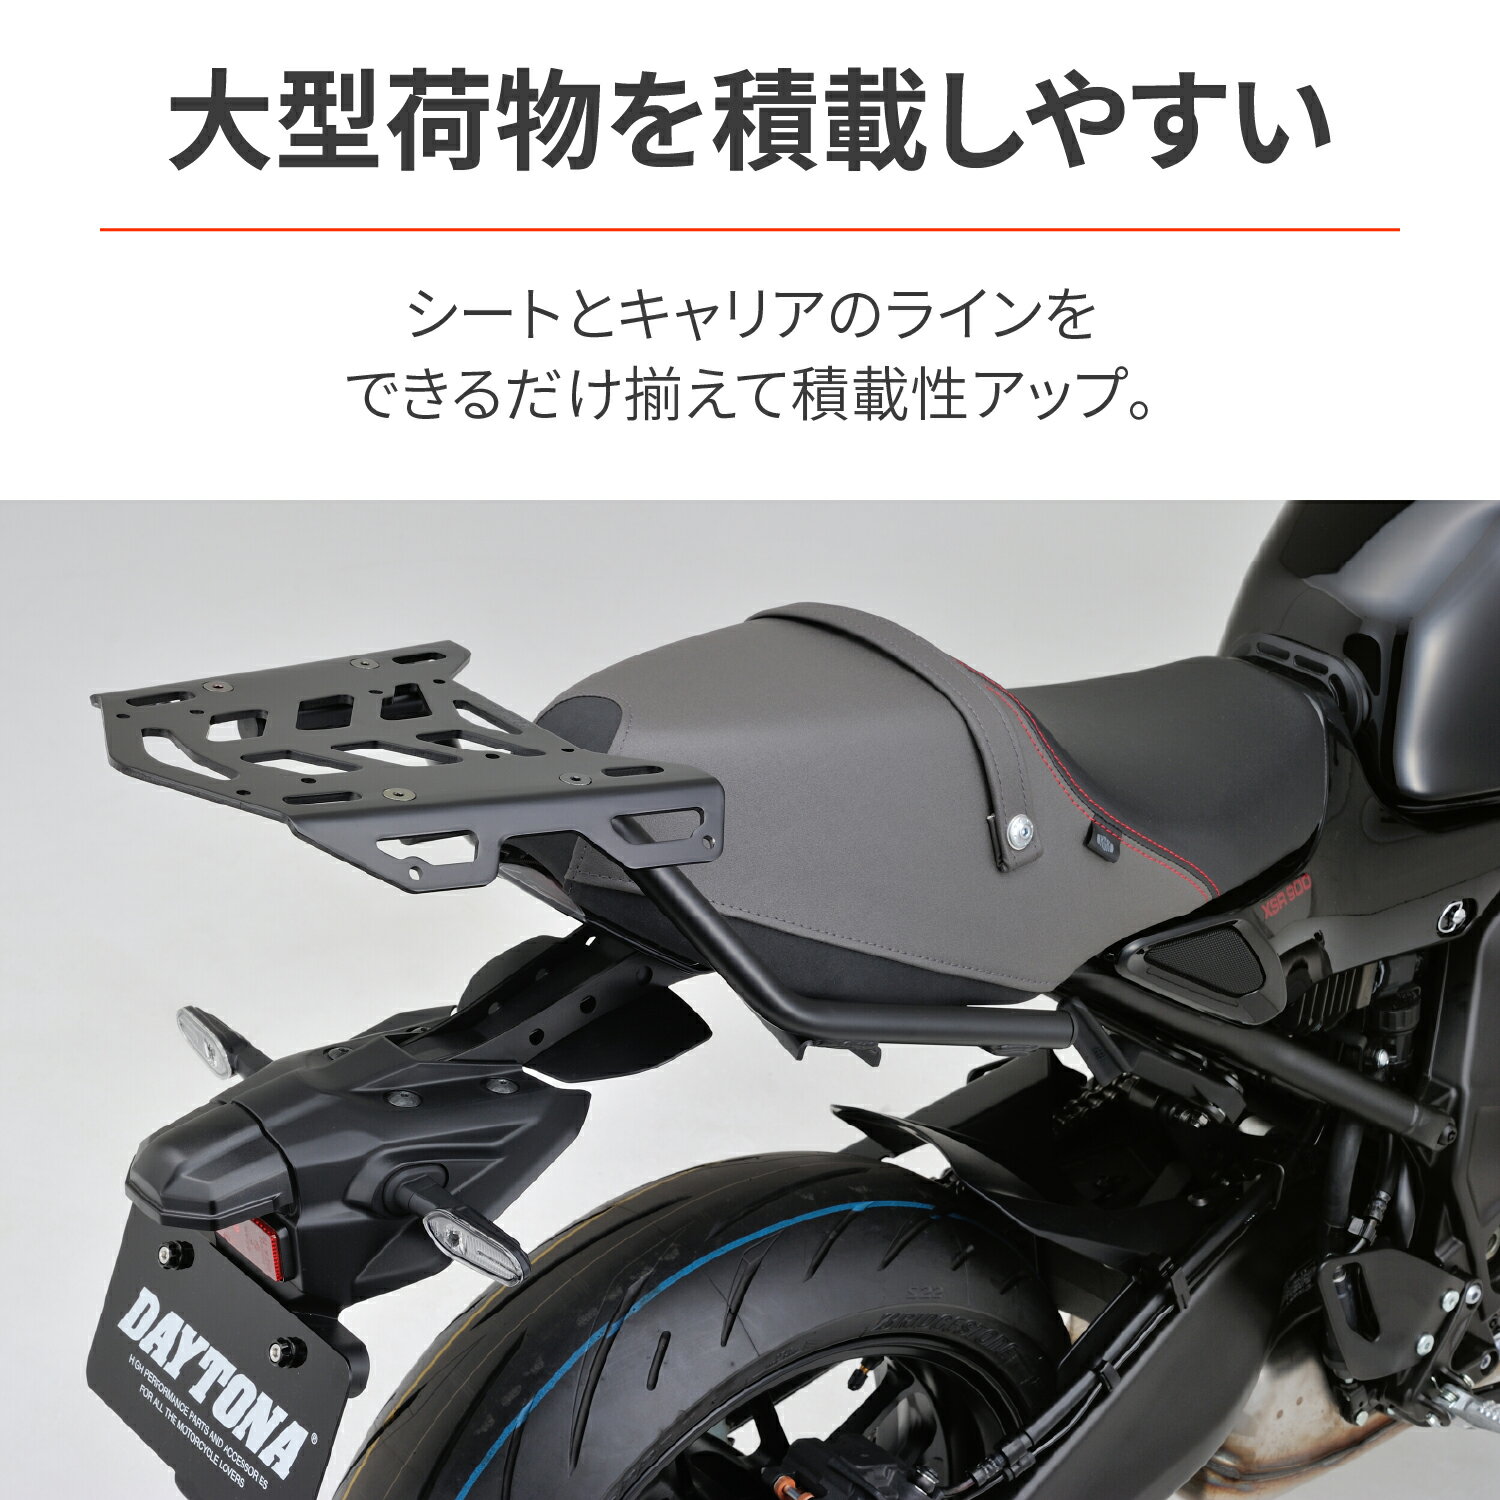 デイトナ DAYTONA バイク用 バイク用 キャリア XSR900(22)専用 マルチウイングキャリア 29546 3